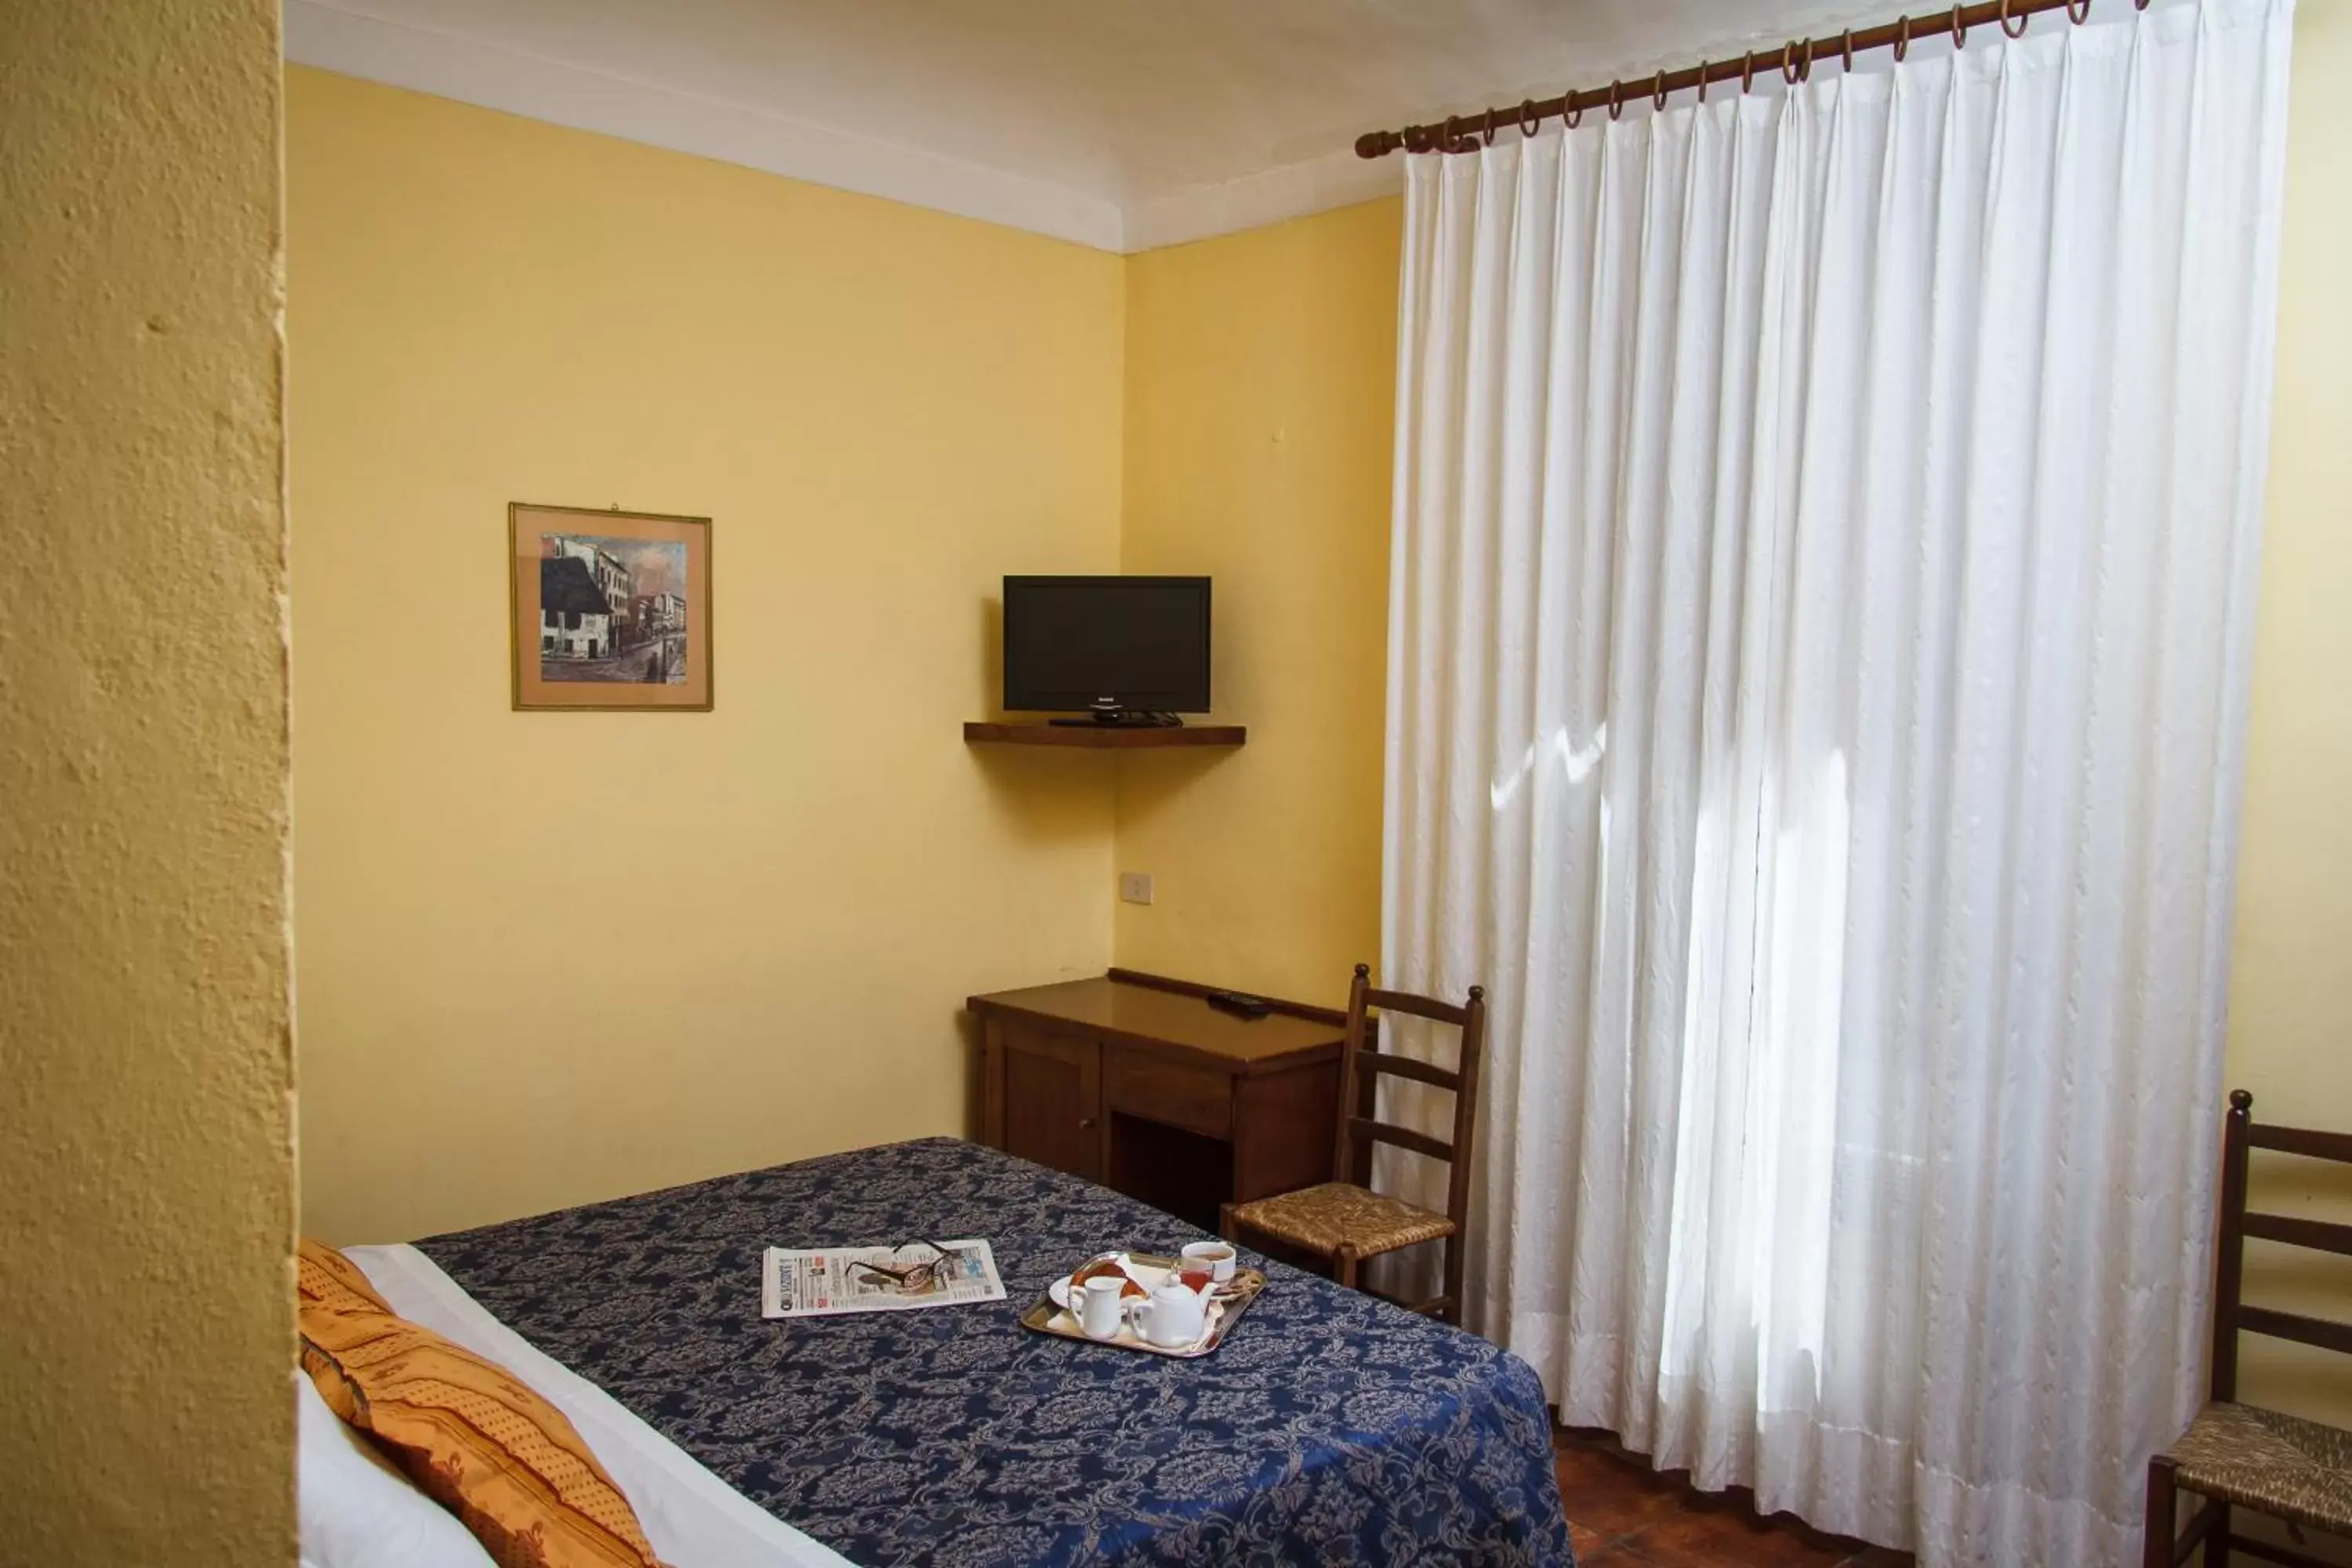 Bedroom, Room Photo in Hotel Nizza